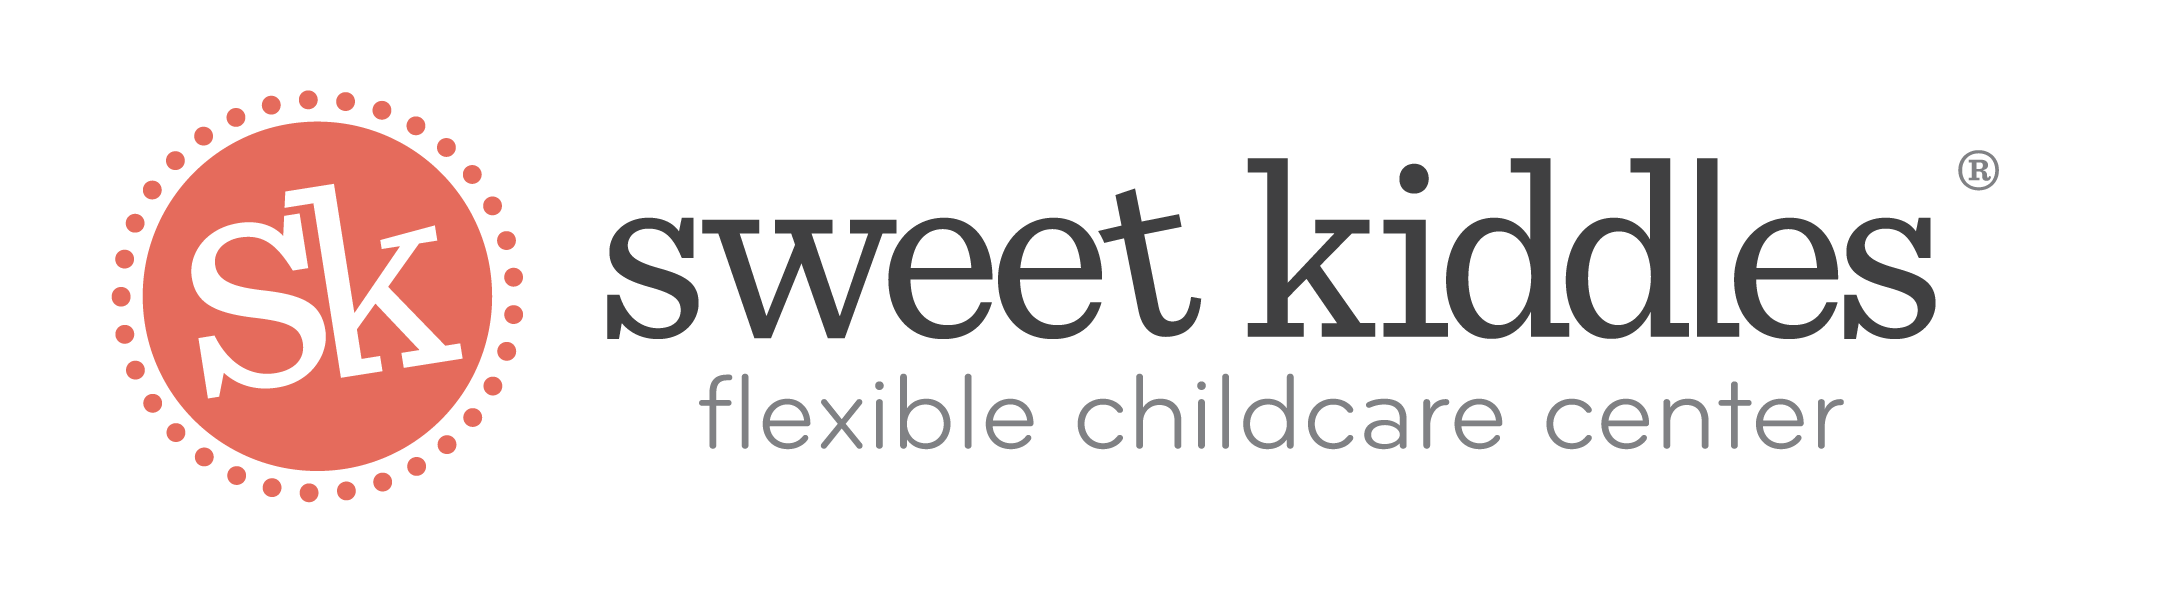 sweet kiddles logo.png